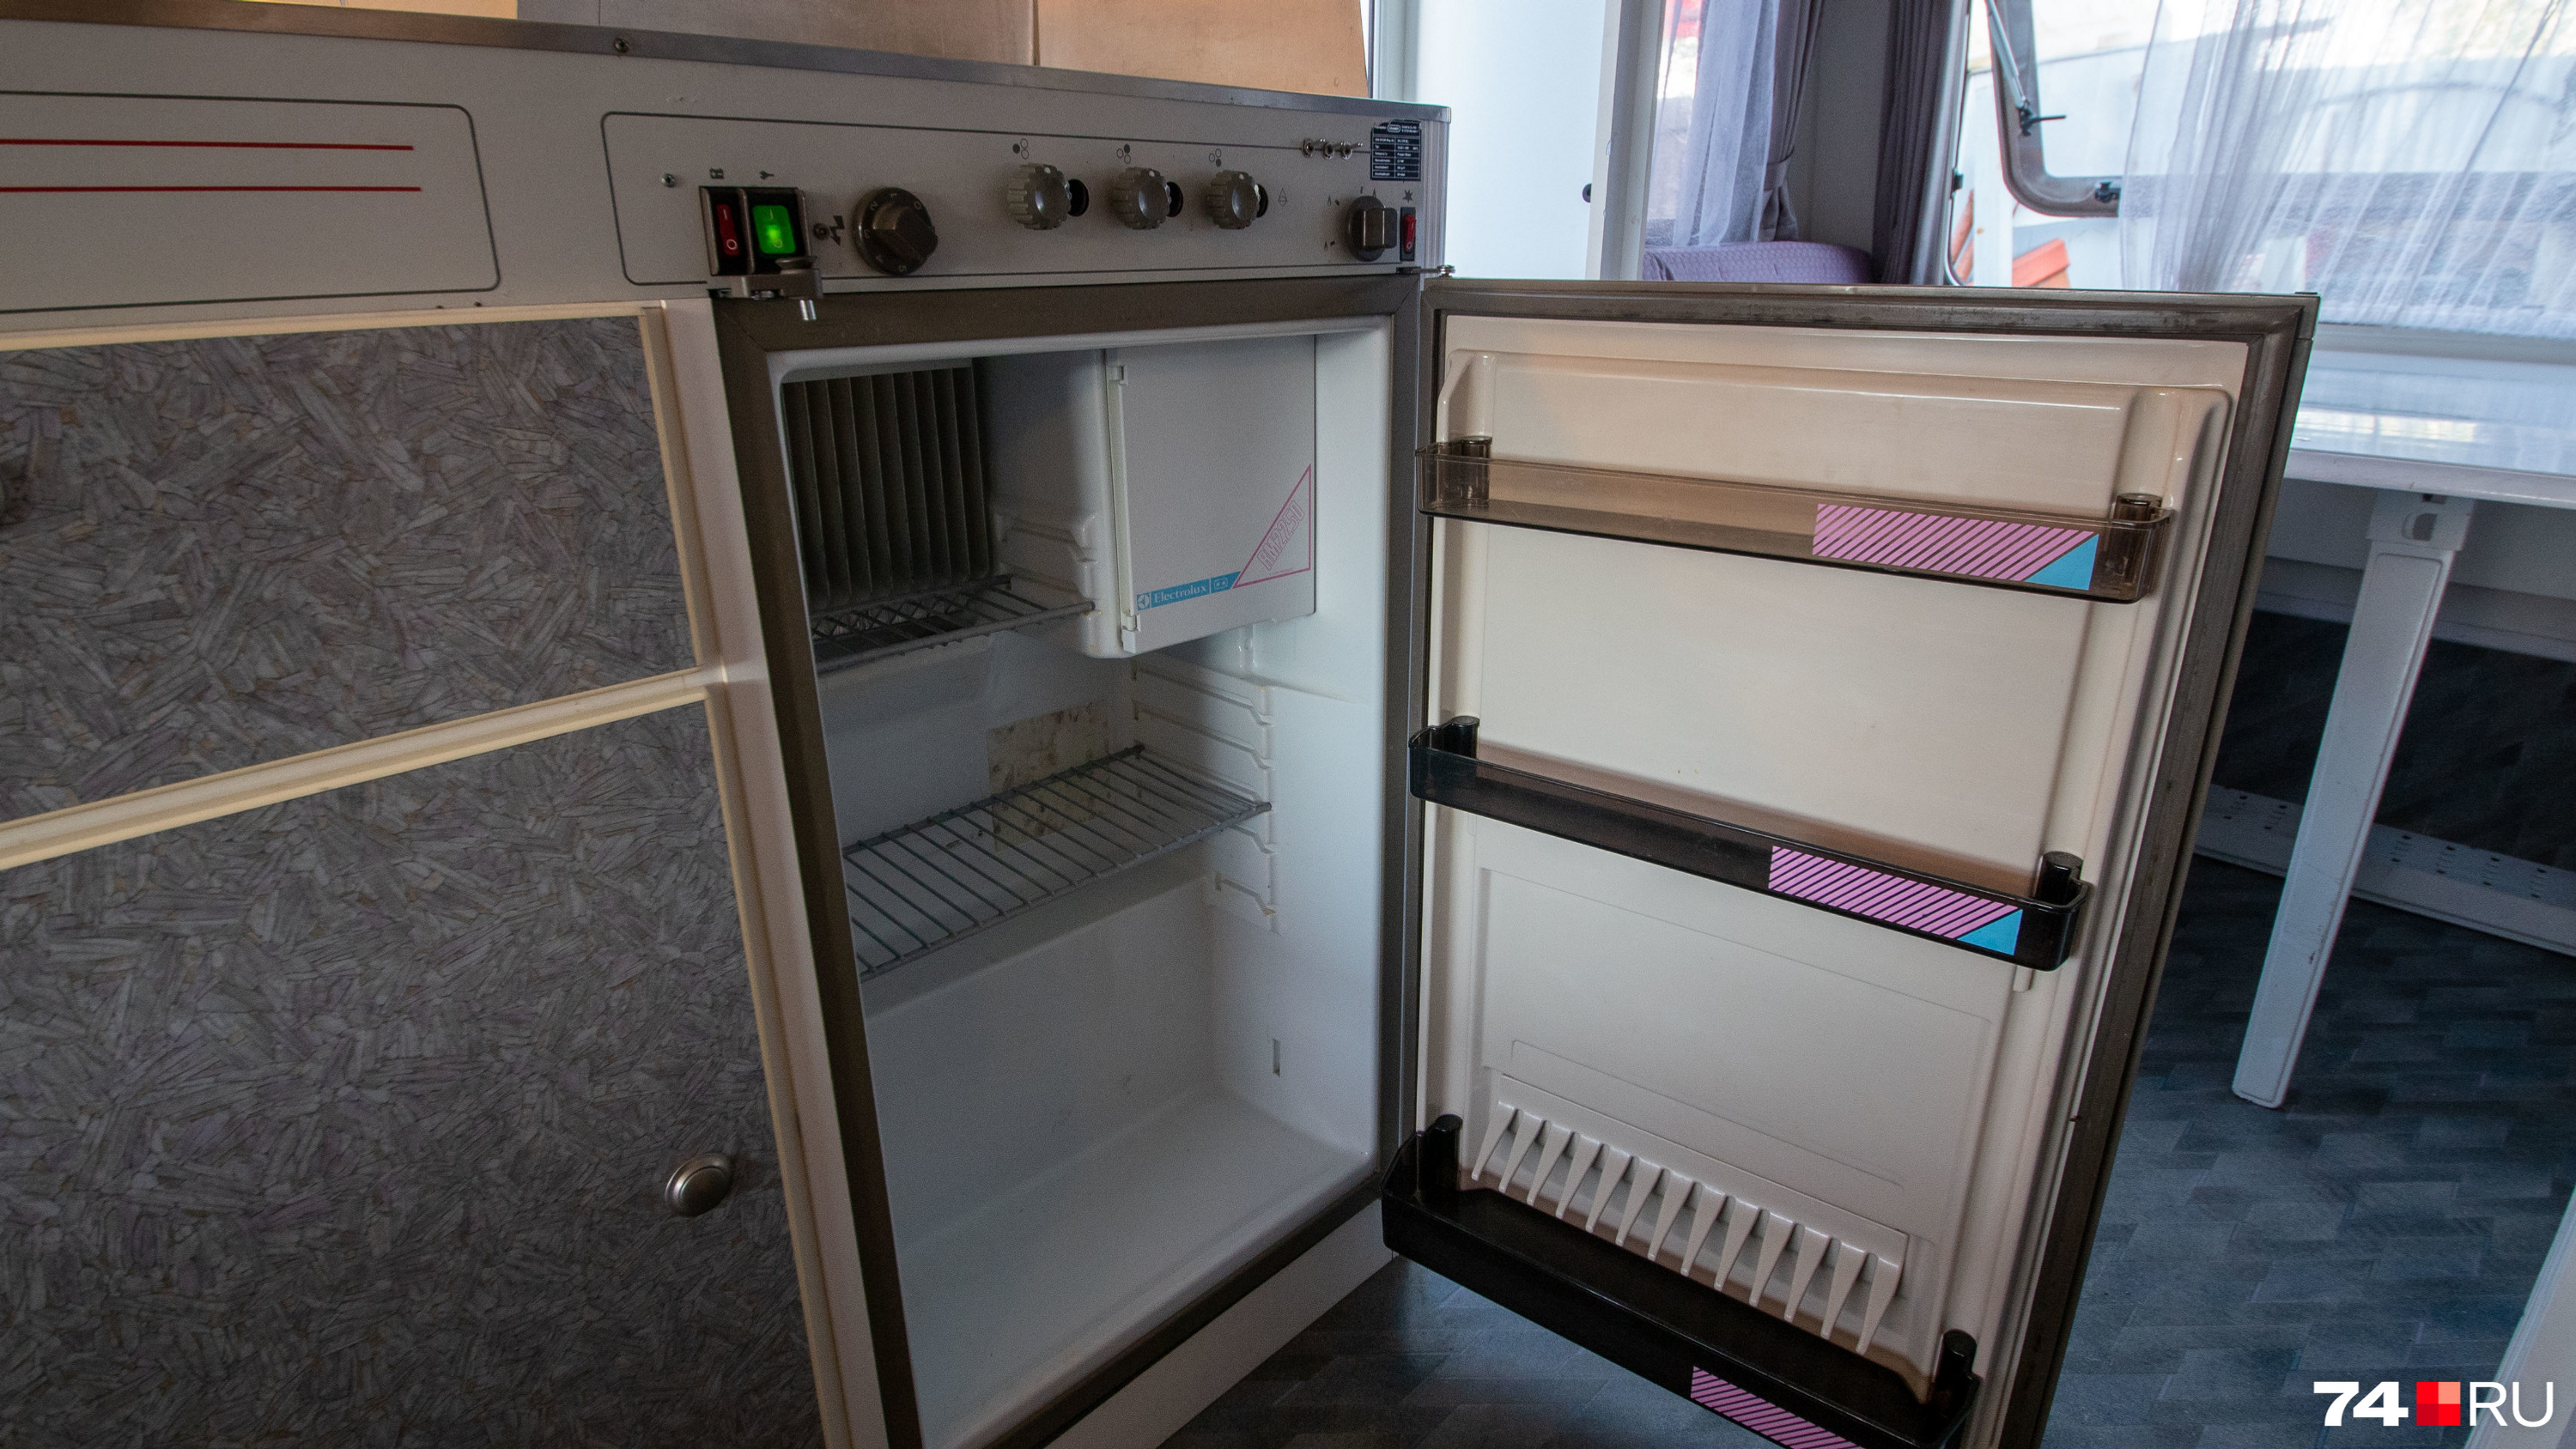 Кухонная зона компактная, но вместительная: есть небольшой холодильник, плита и шкафчики для посуды